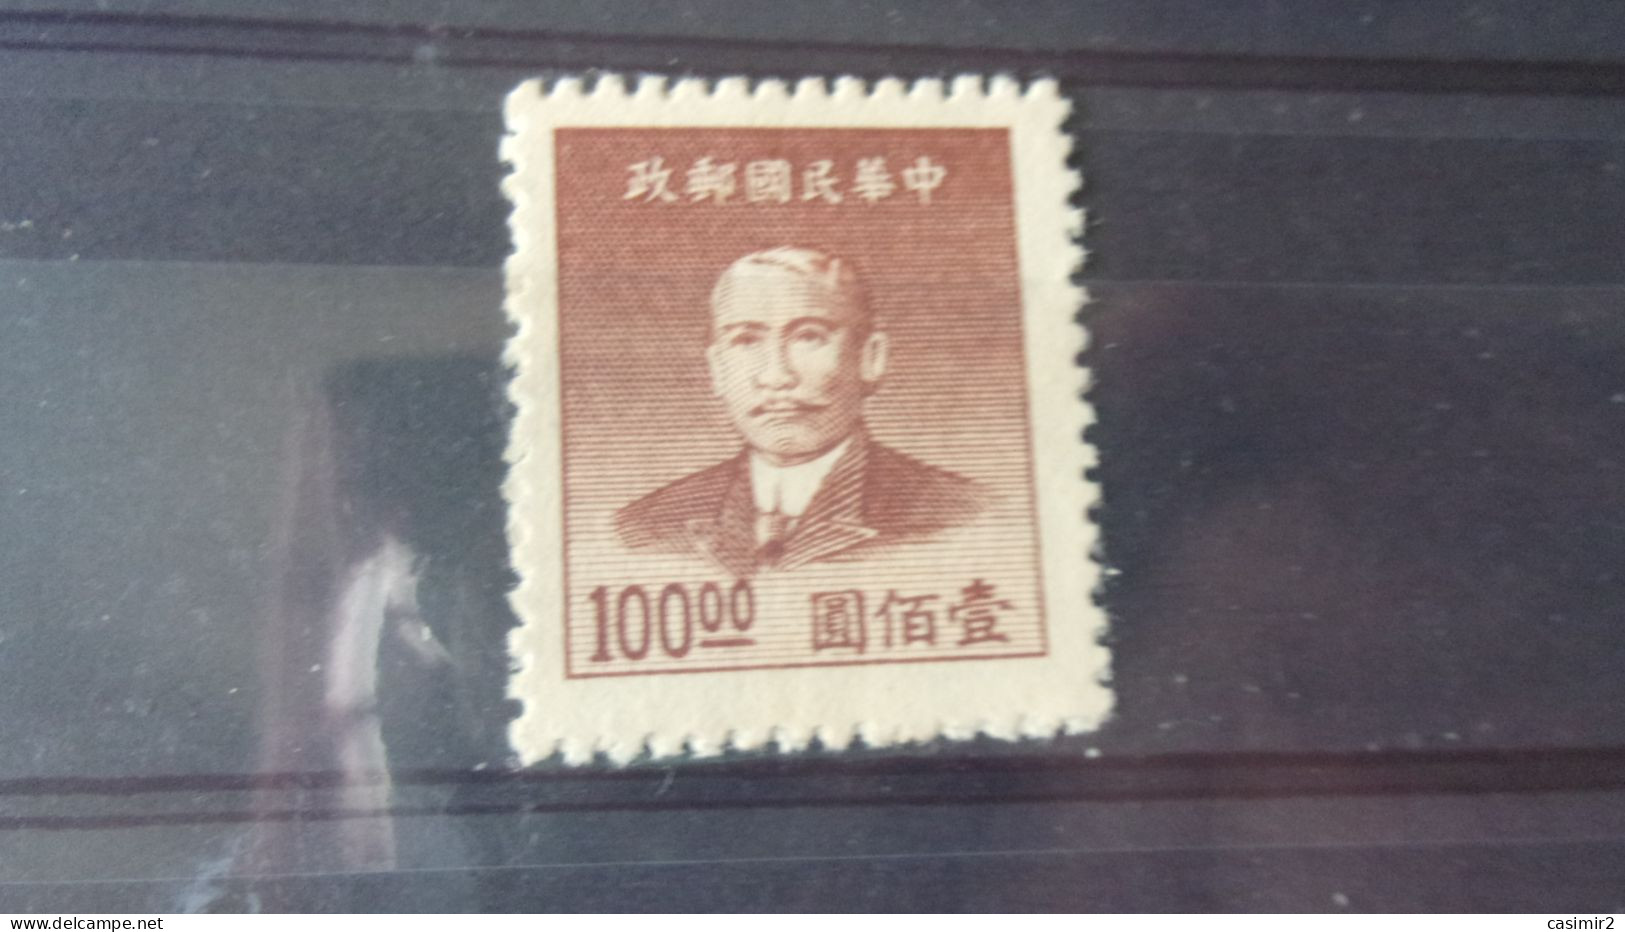 CHINE   YVERT N° 725 - 1912-1949 República